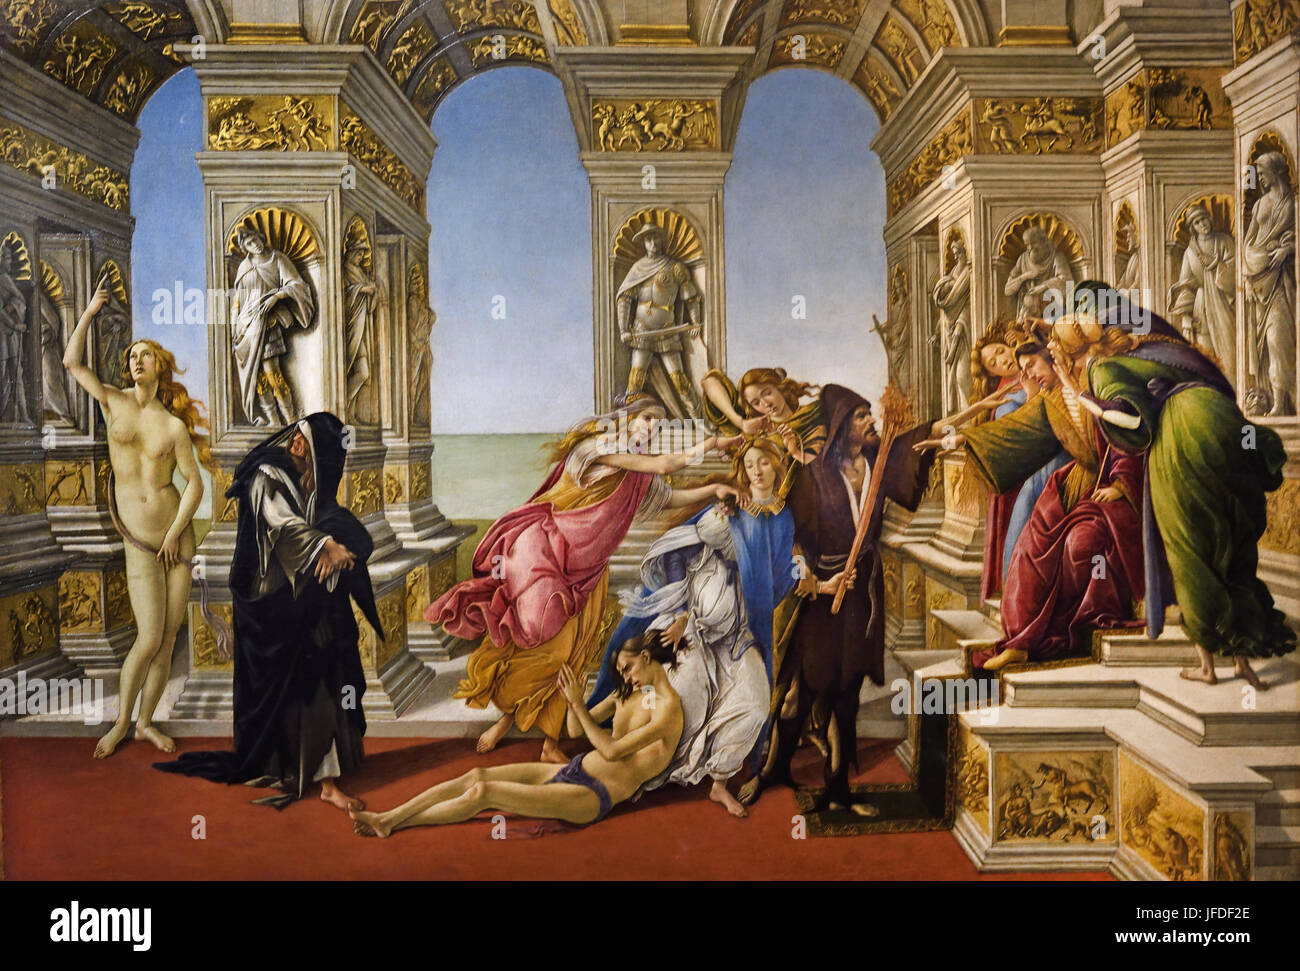 Calunnia di Apelle, che è 1495 Sandro Botticelli ( Alessandro di Mariano Filipepi ) 1445-1510 Firenze pittore italiano di scuola fiorentina del primo Rinascimento. (Botticelli fatto questo dipinto sulla descrizione di un dipinto di Apelle, che è un pittore greco del periodo ellenistico. Apelle, che è Foto Stock